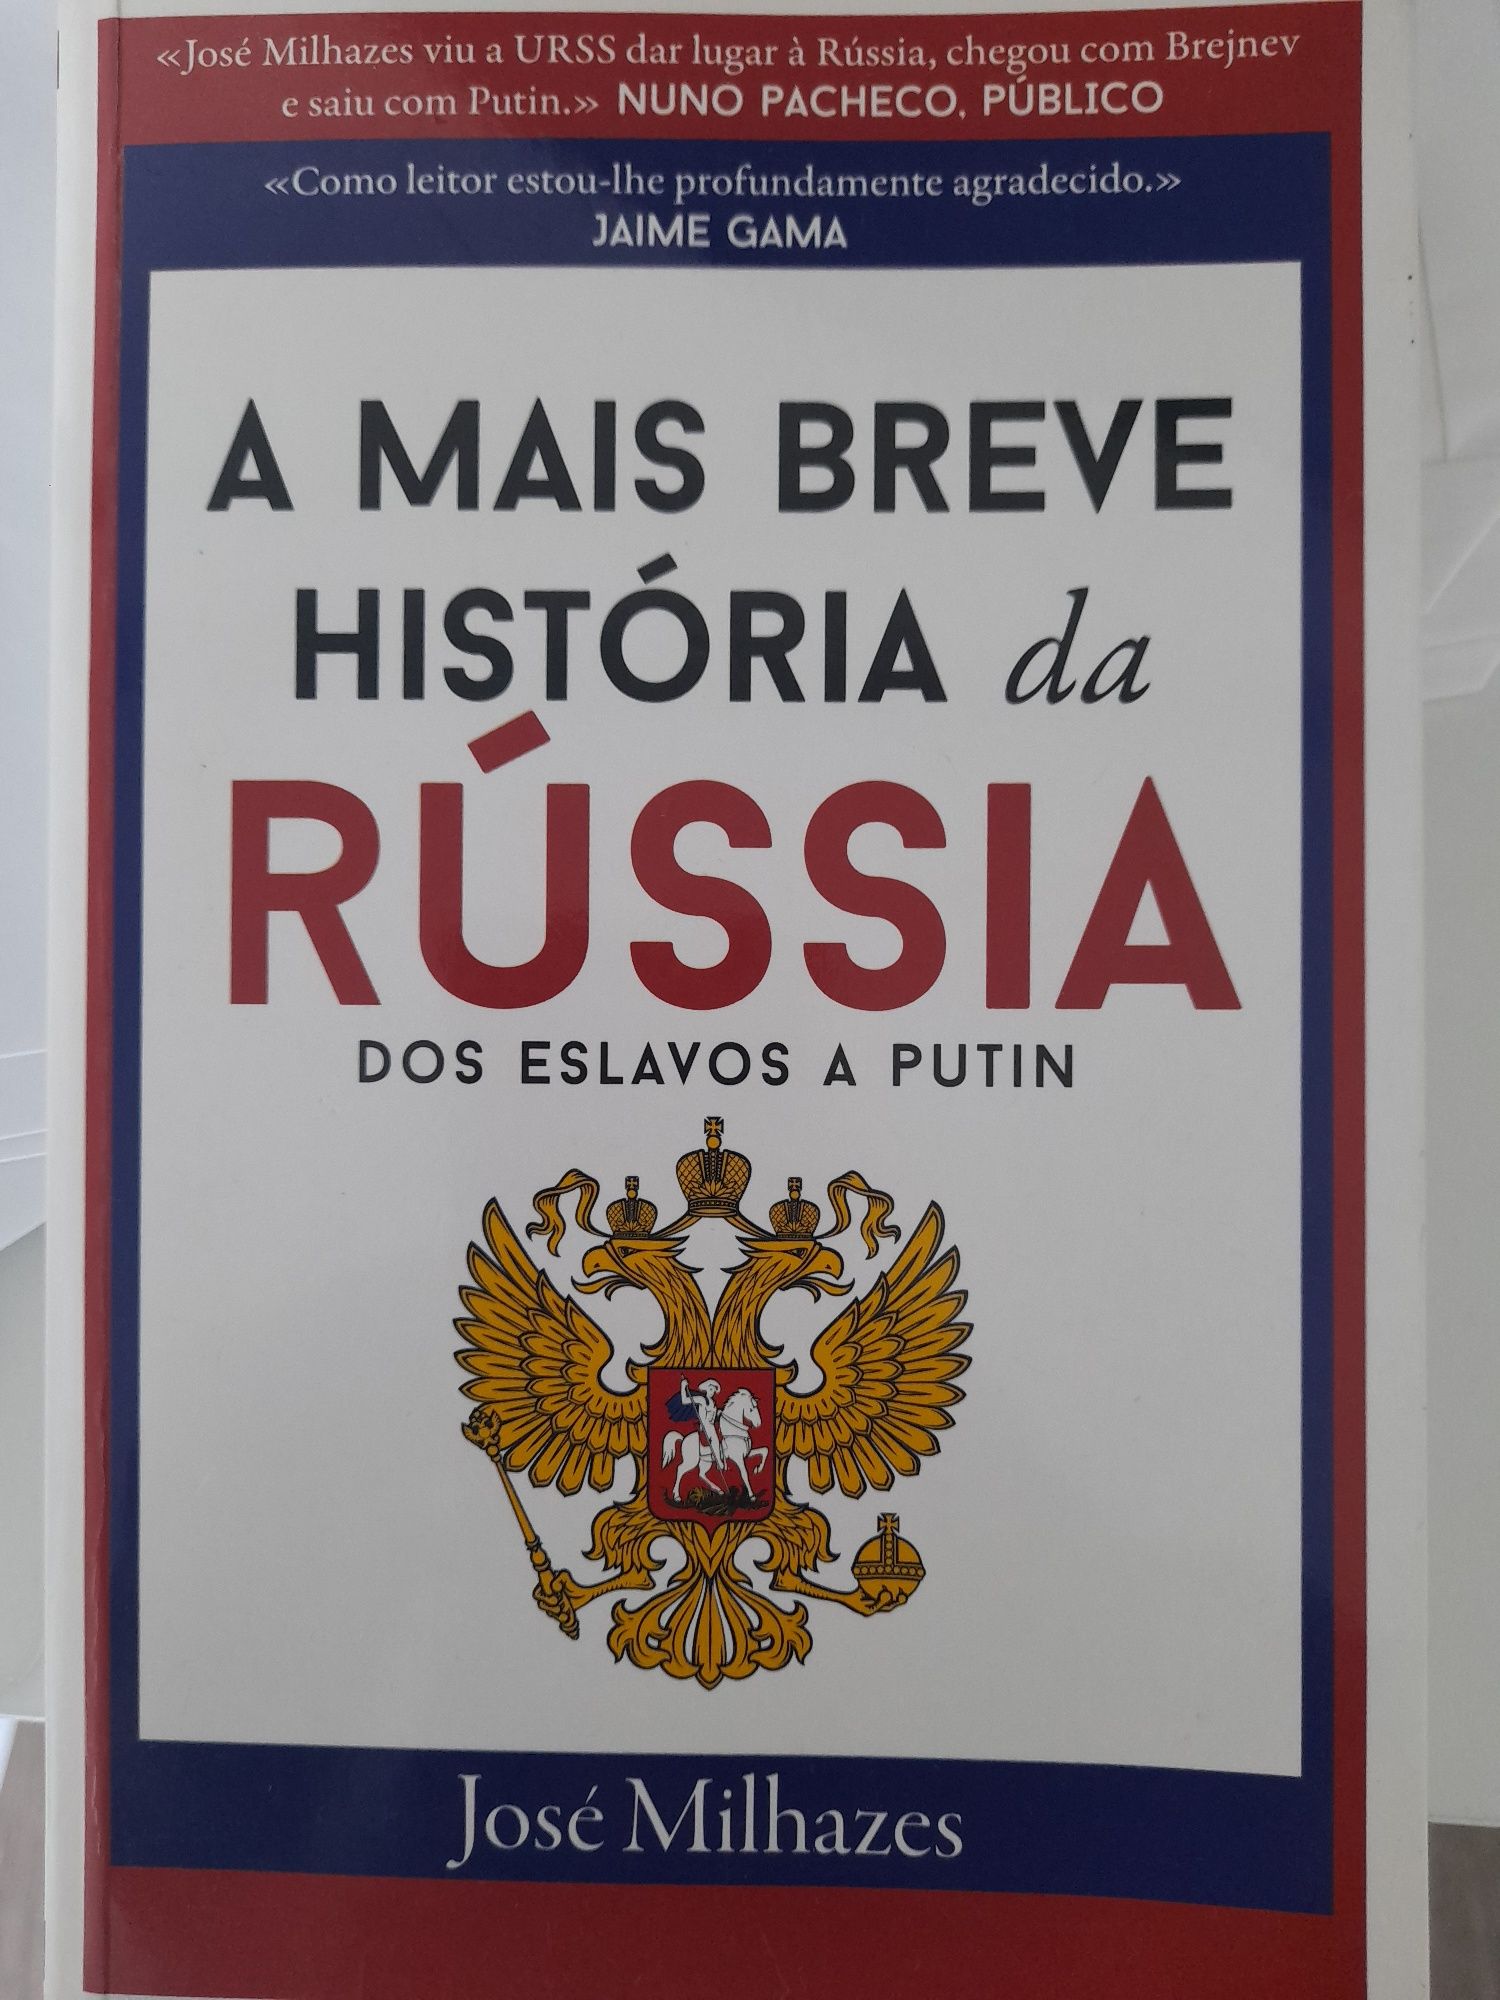 Livro "a mais breve história da Rússia" -José Milhazes